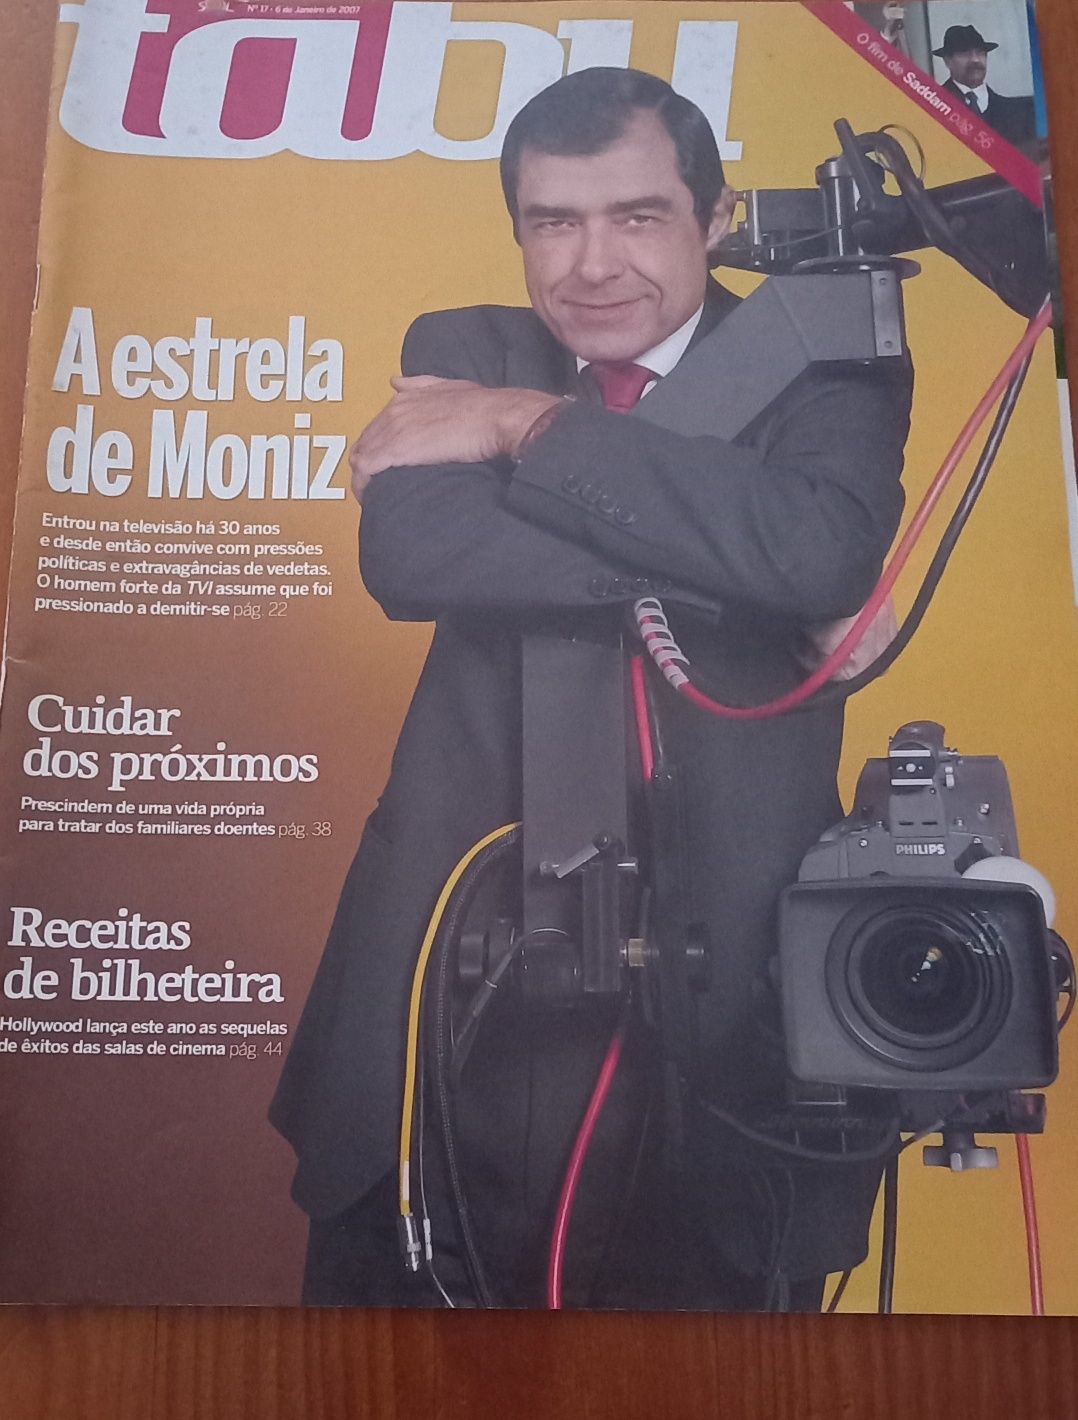 José Eduardo Moniz 2001 a 2014 três revistas e conteúdos